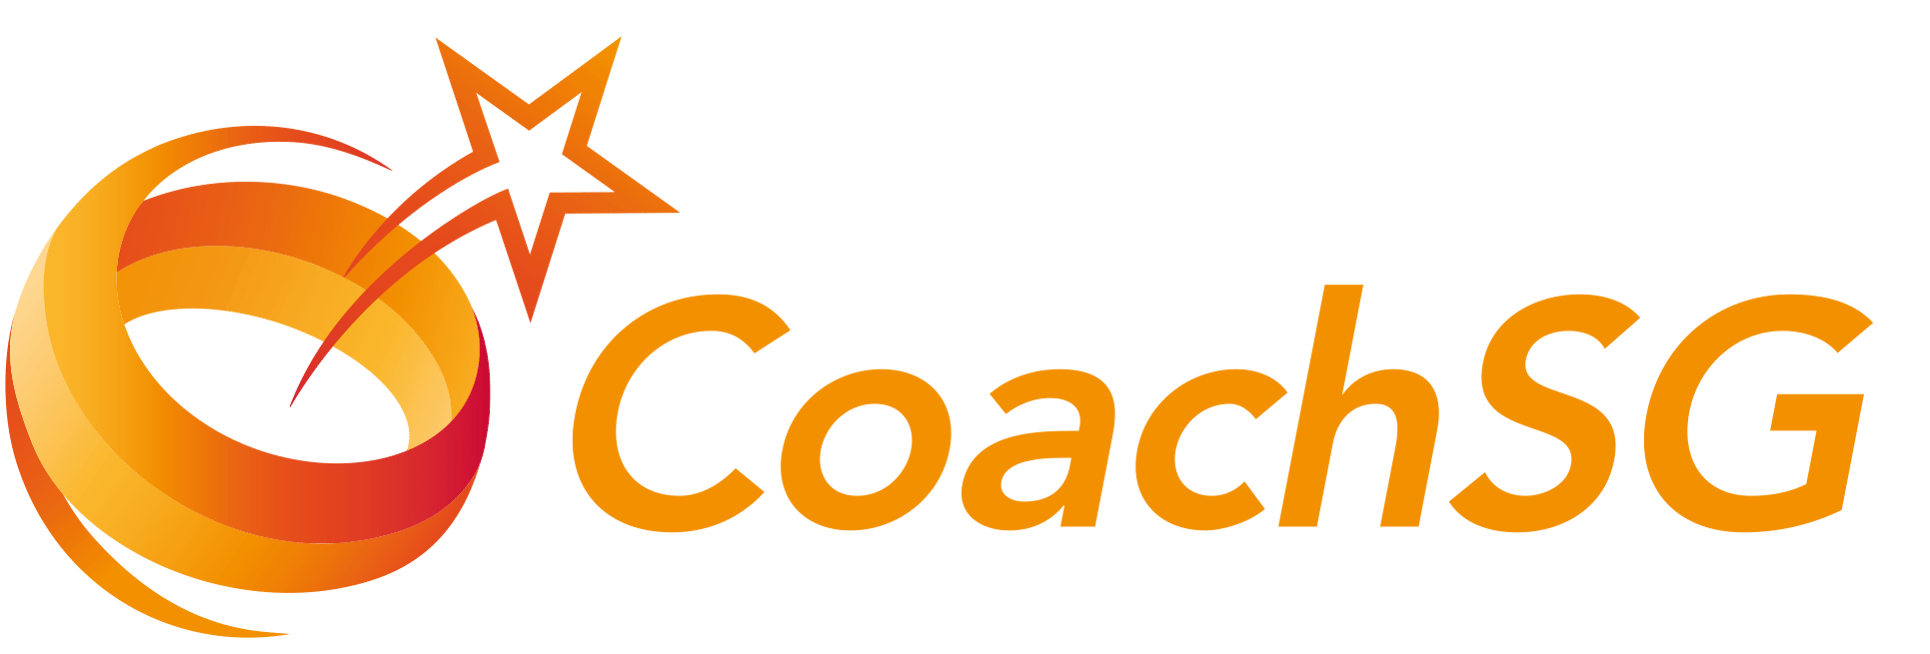 CoachSG Logo Gradient Full Colour